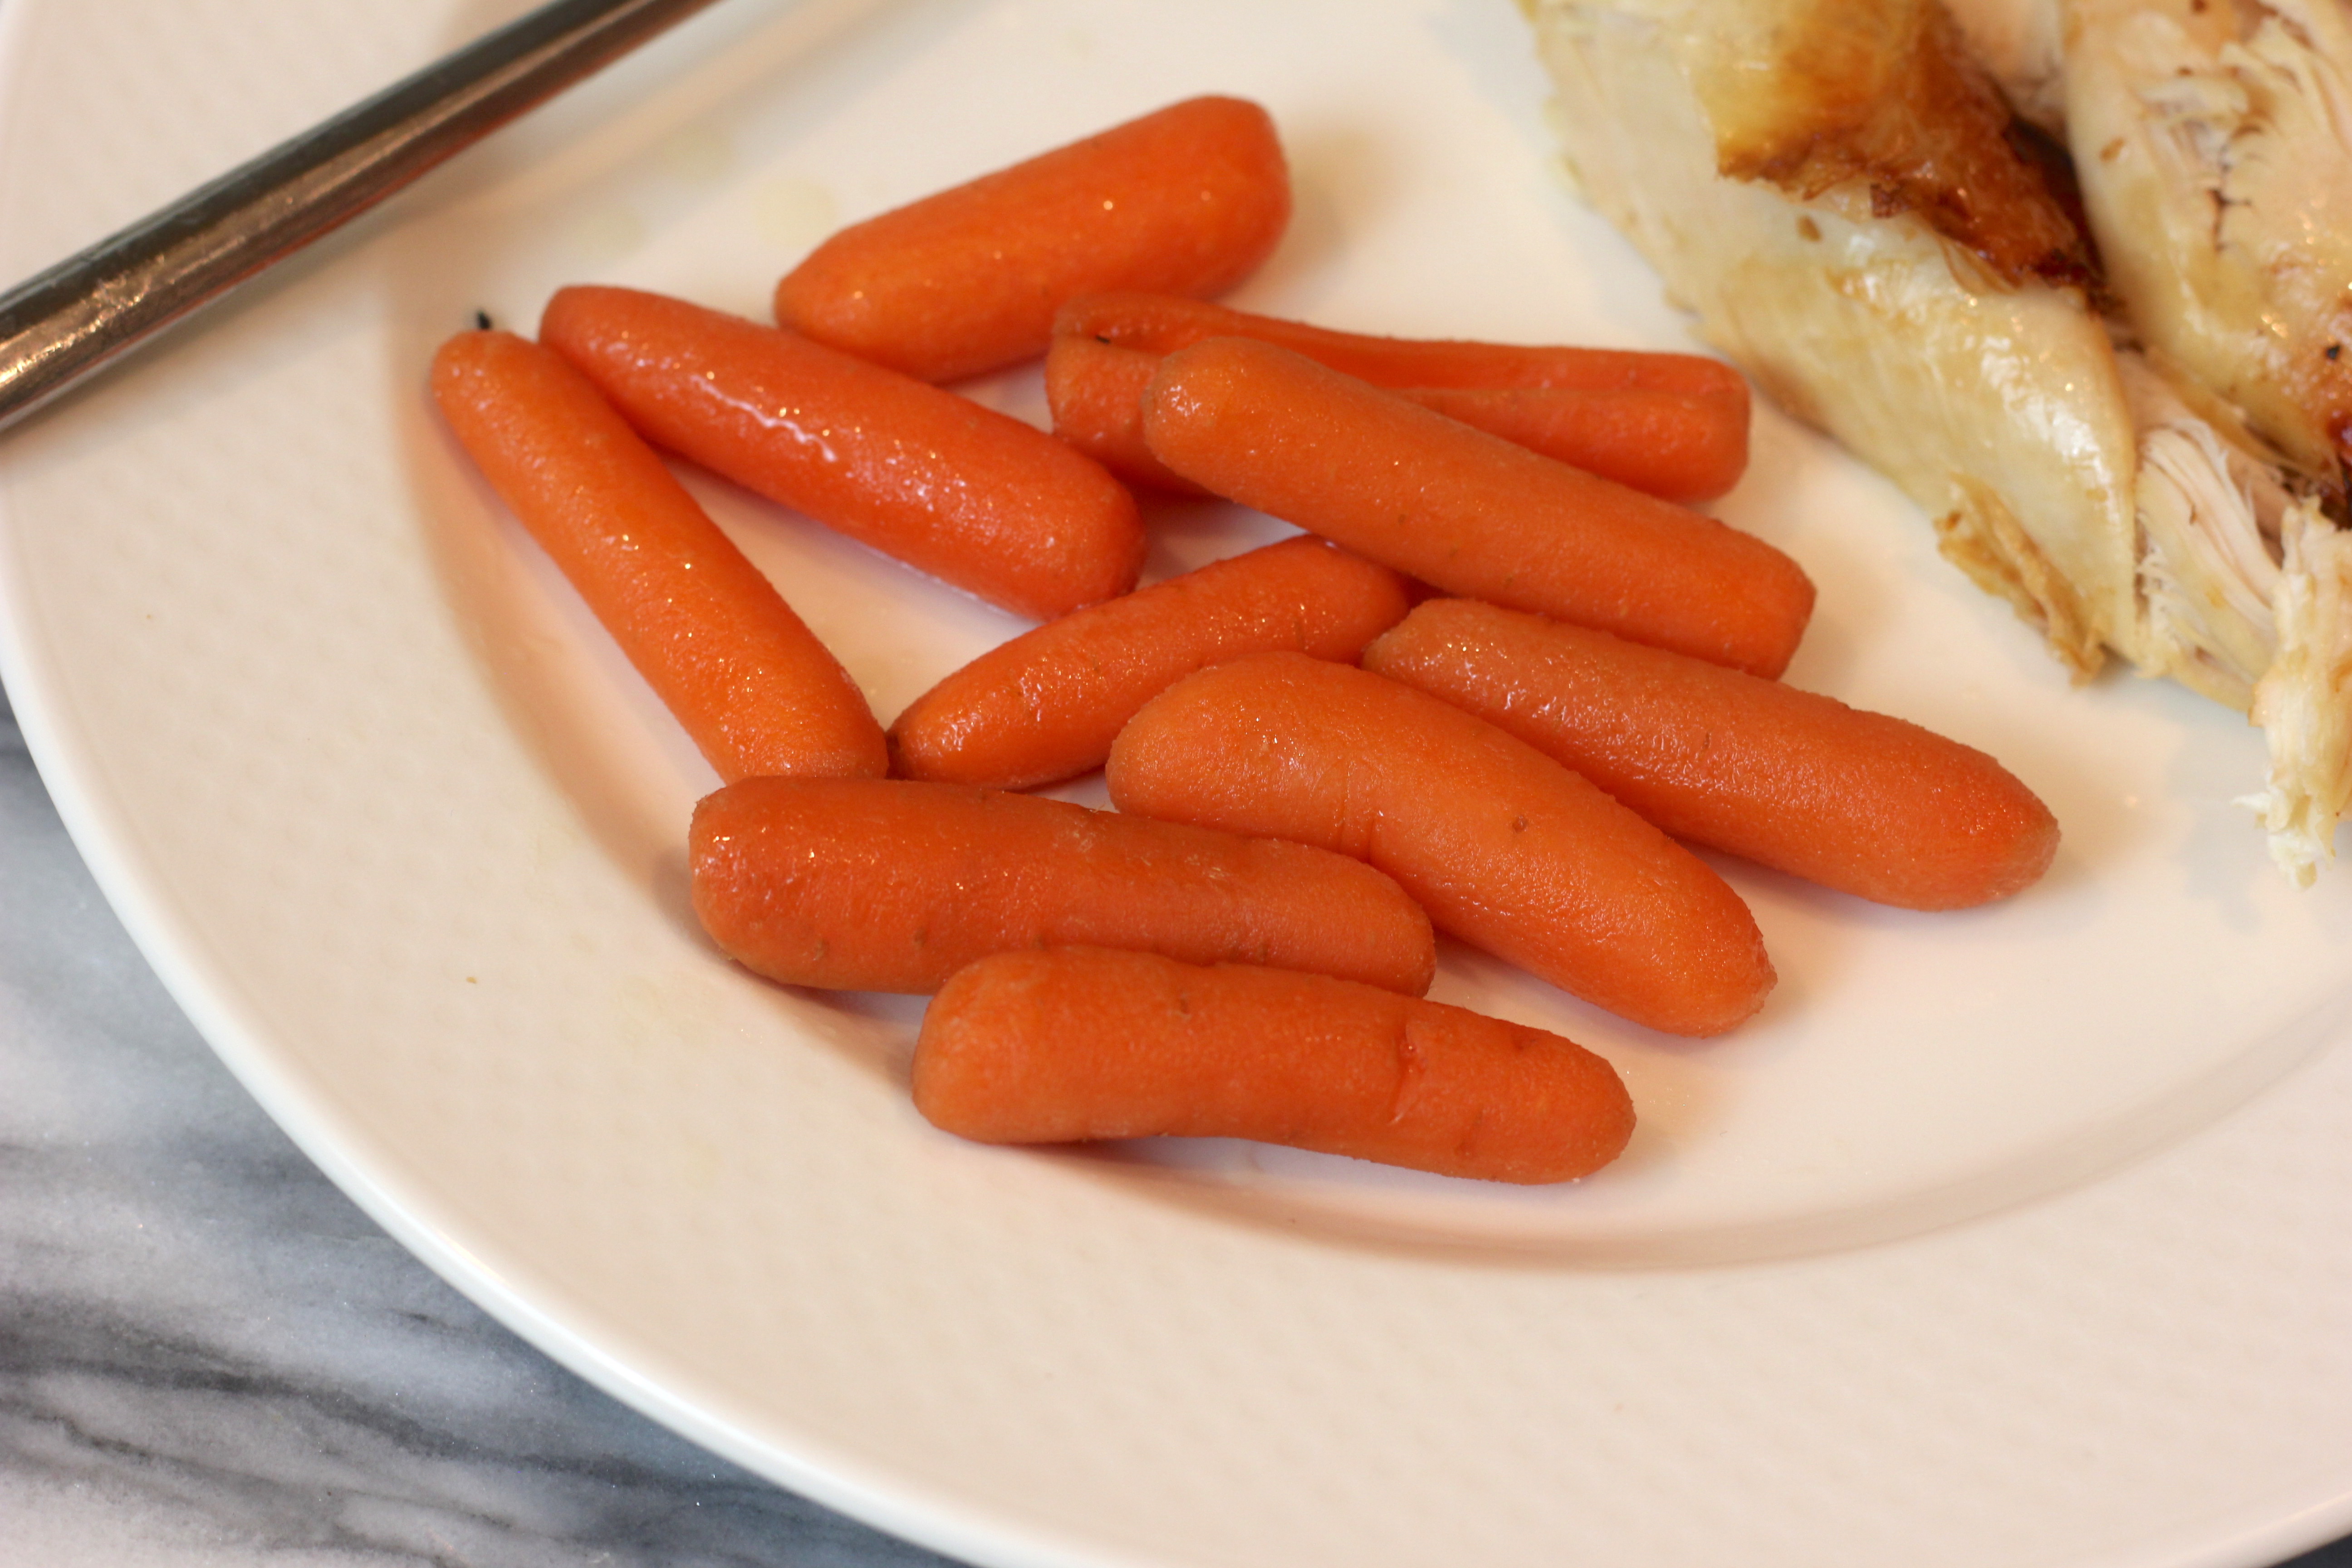 Slow cooker maple bourbon glazed carrots